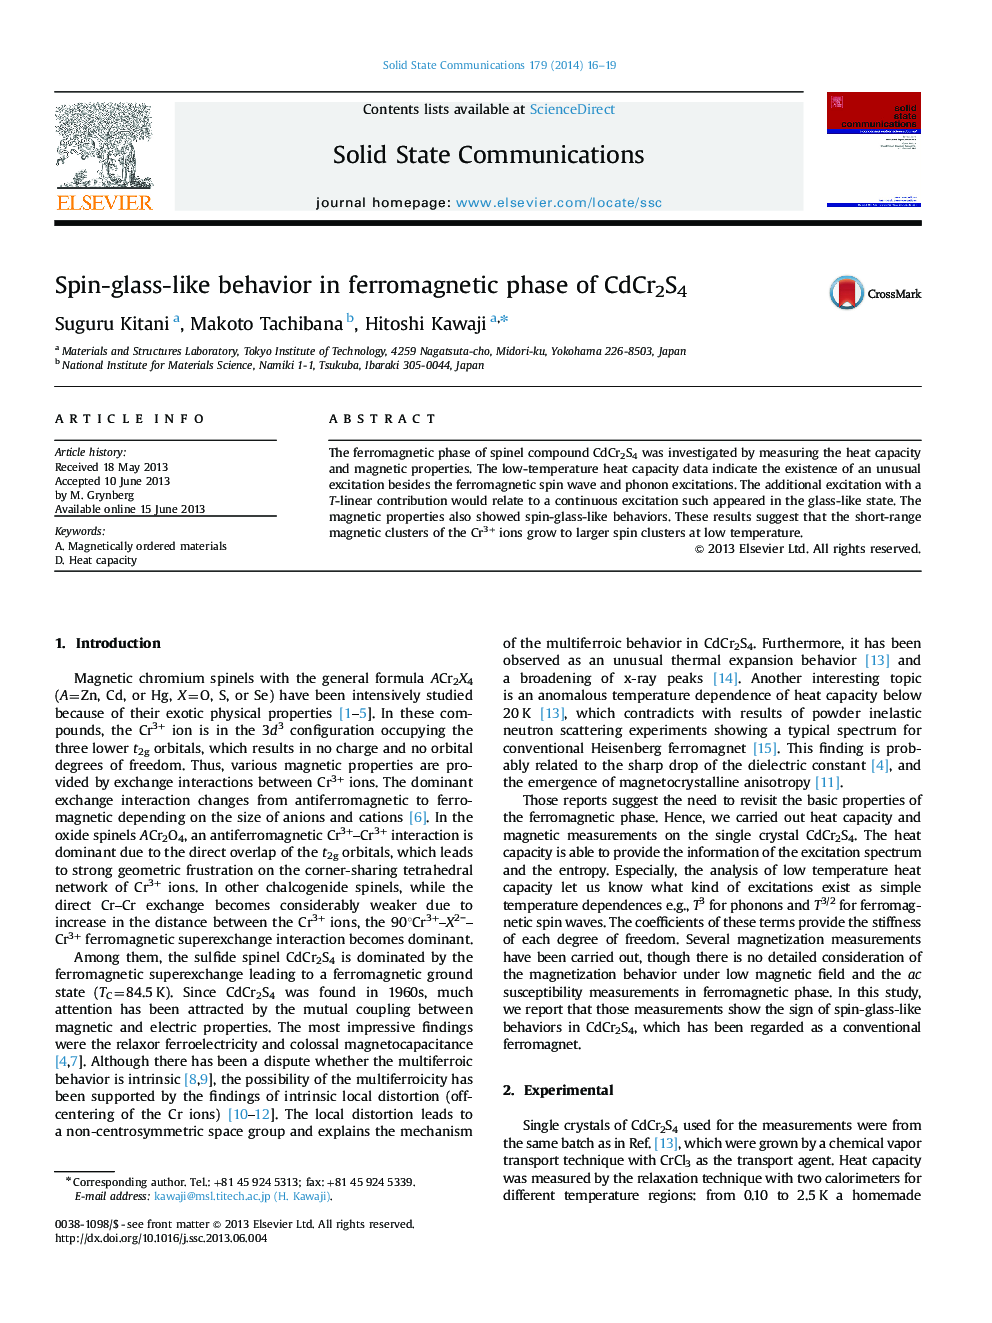 Spin-glass-like behavior in ferromagnetic phase of CdCr2S4